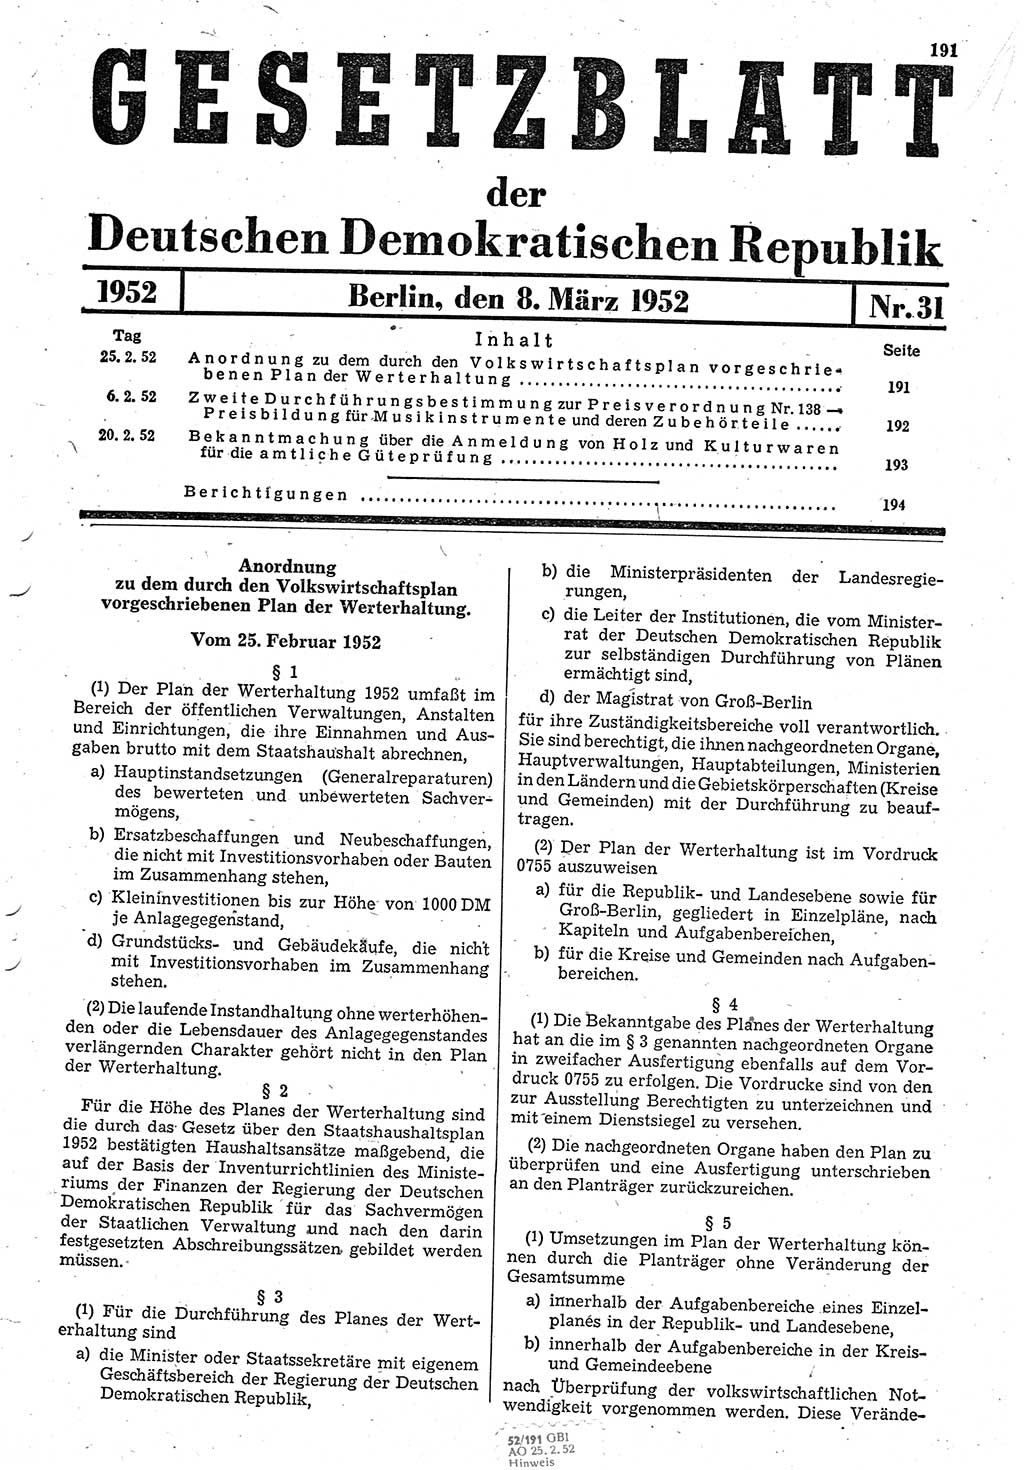 Gesetzblatt (GBl.) der Deutschen Demokratischen Republik (DDR) 1952, Seite 191 (GBl. DDR 1952, S. 191)